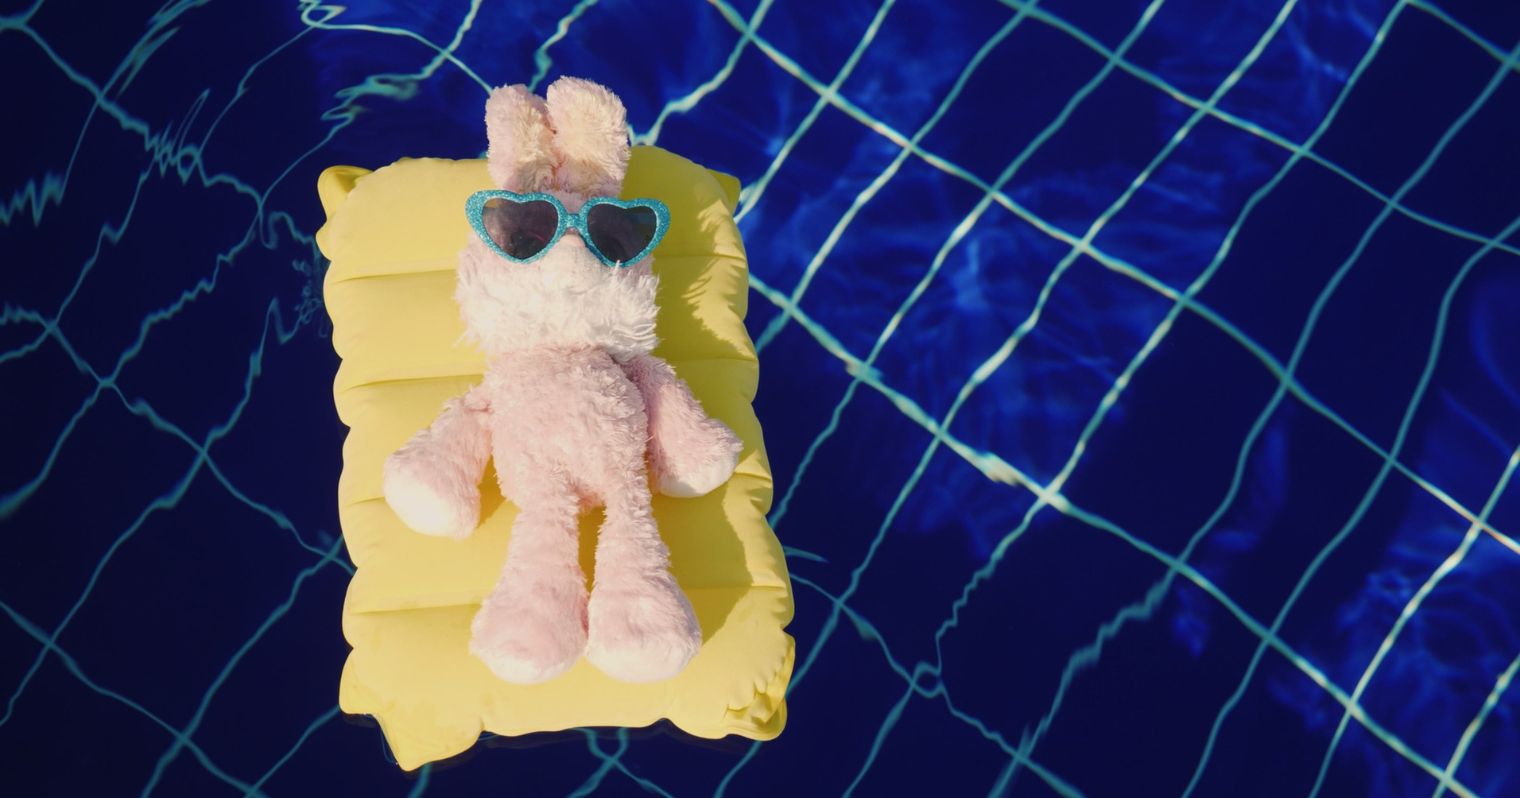 A képen egy medencében egy kicsi gumimatracon egy plüssállat napozik